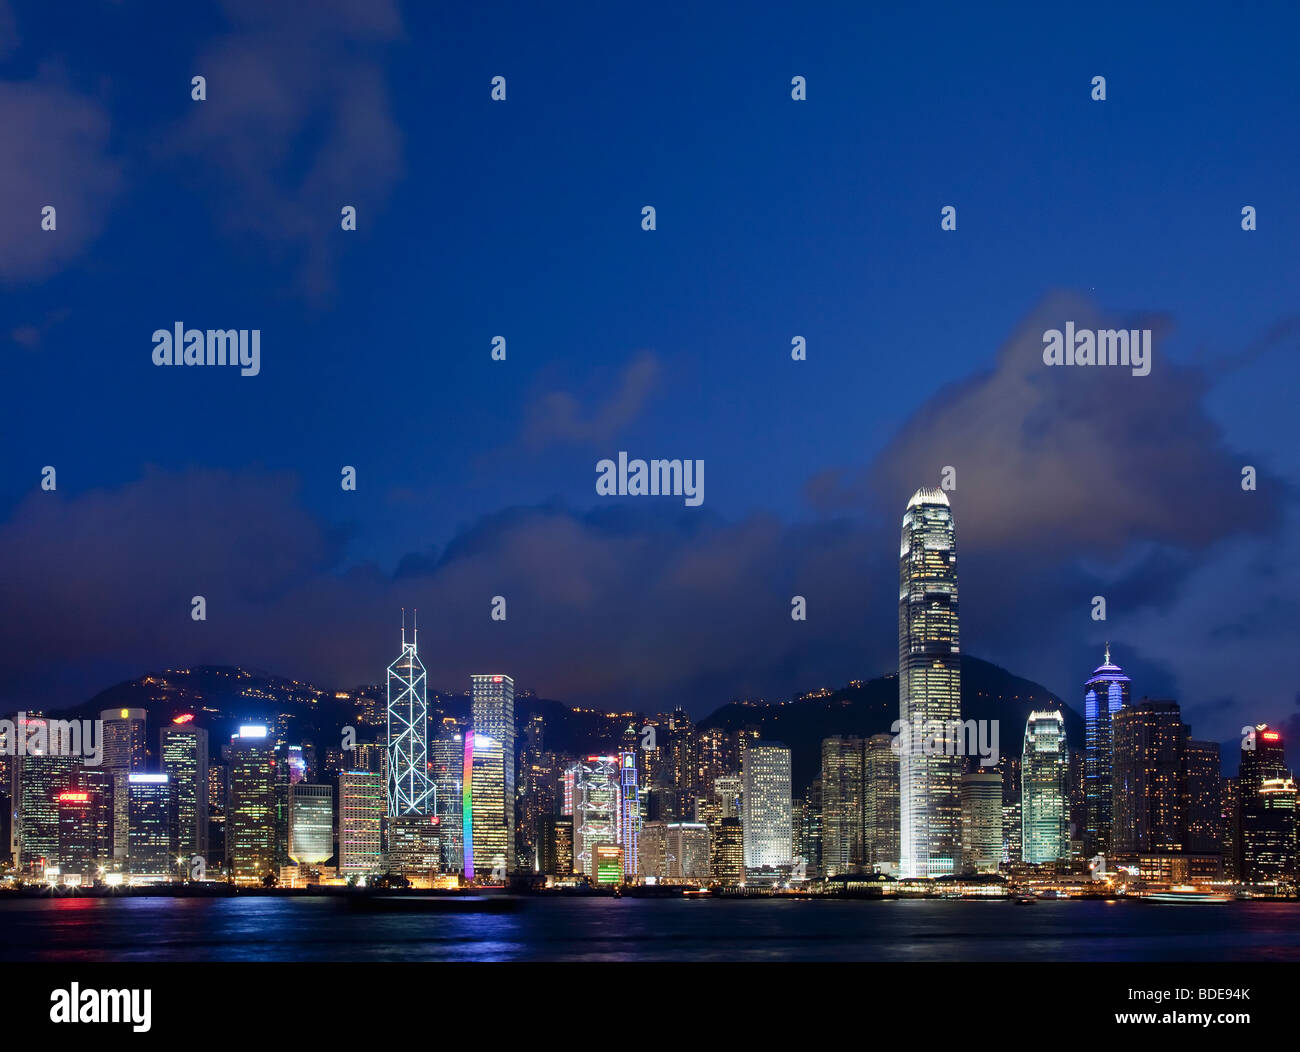 Vue sur le port de Victoria d'immeubles de grande hauteur dans la nuit à Hong Kong, Chine. Banque D'Images